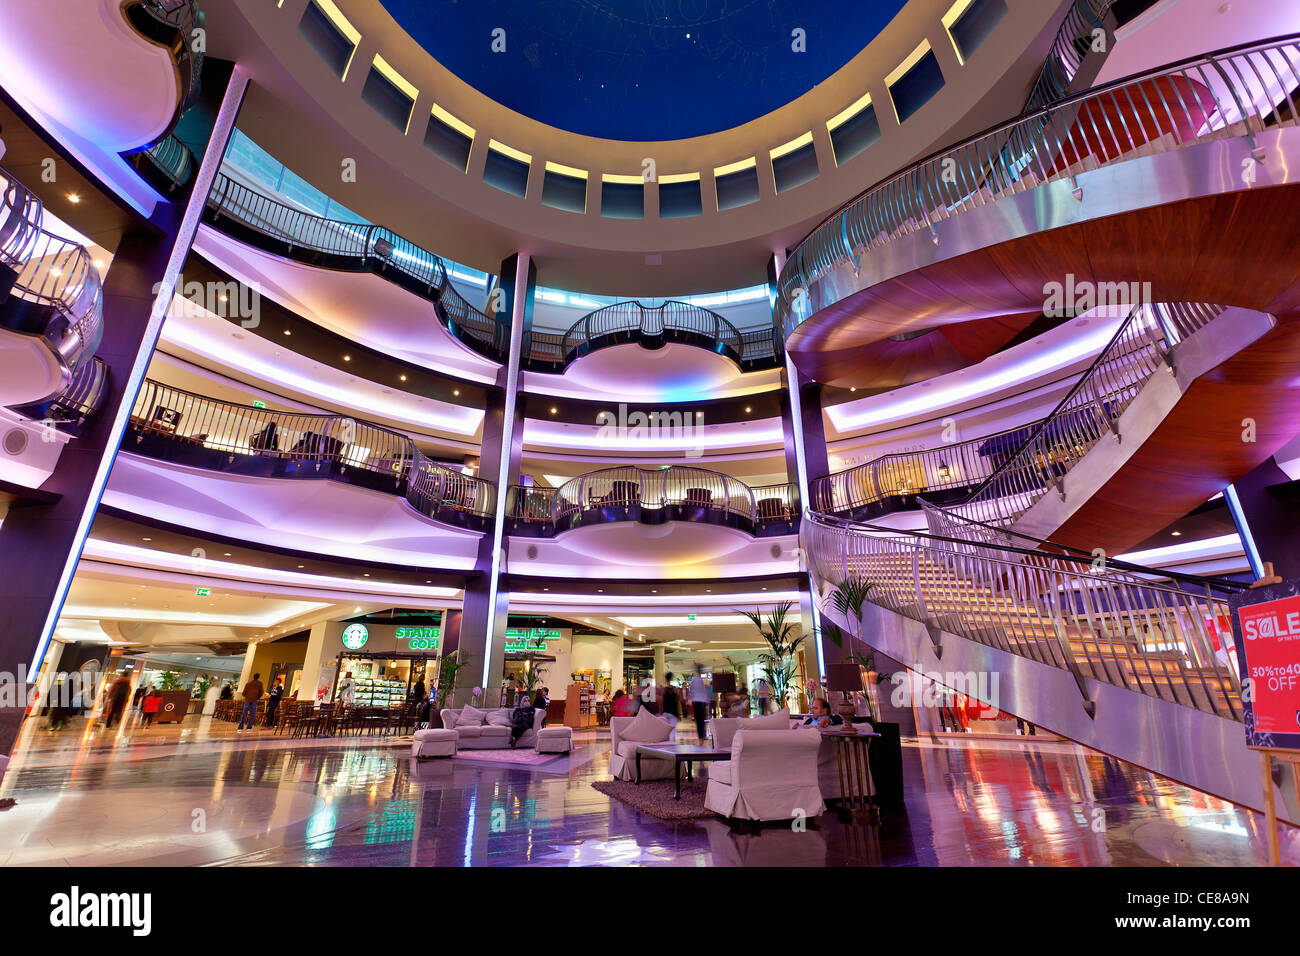 Asia, Arabia, Dubai Emirate, Dubai, Burjuman Mall Stock Photo